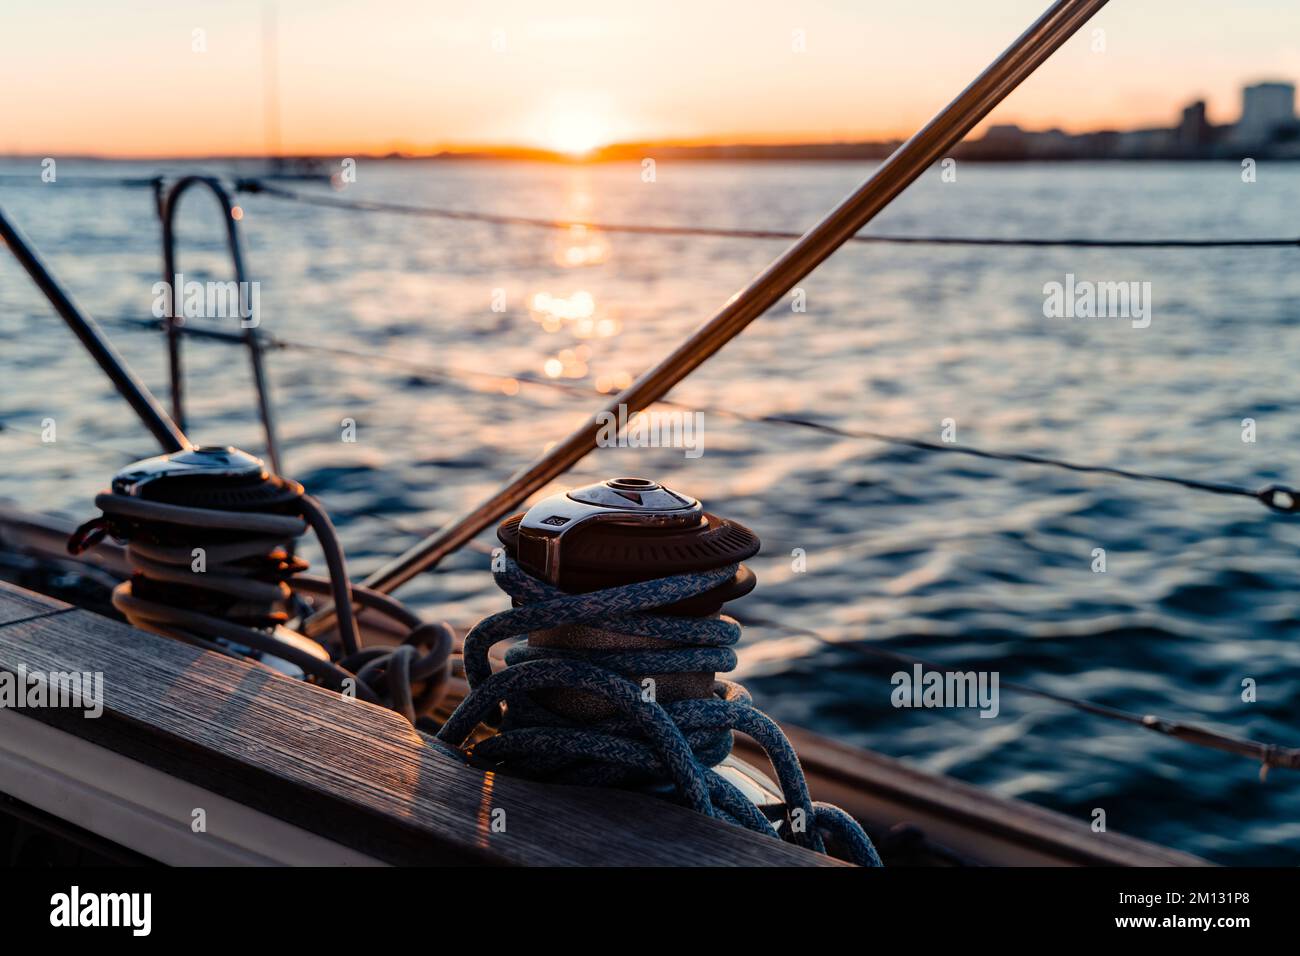 Vue sur la côte depuis un voilier, ambiance nocturne avec coucher de soleil, premier plan vif Banque D'Images